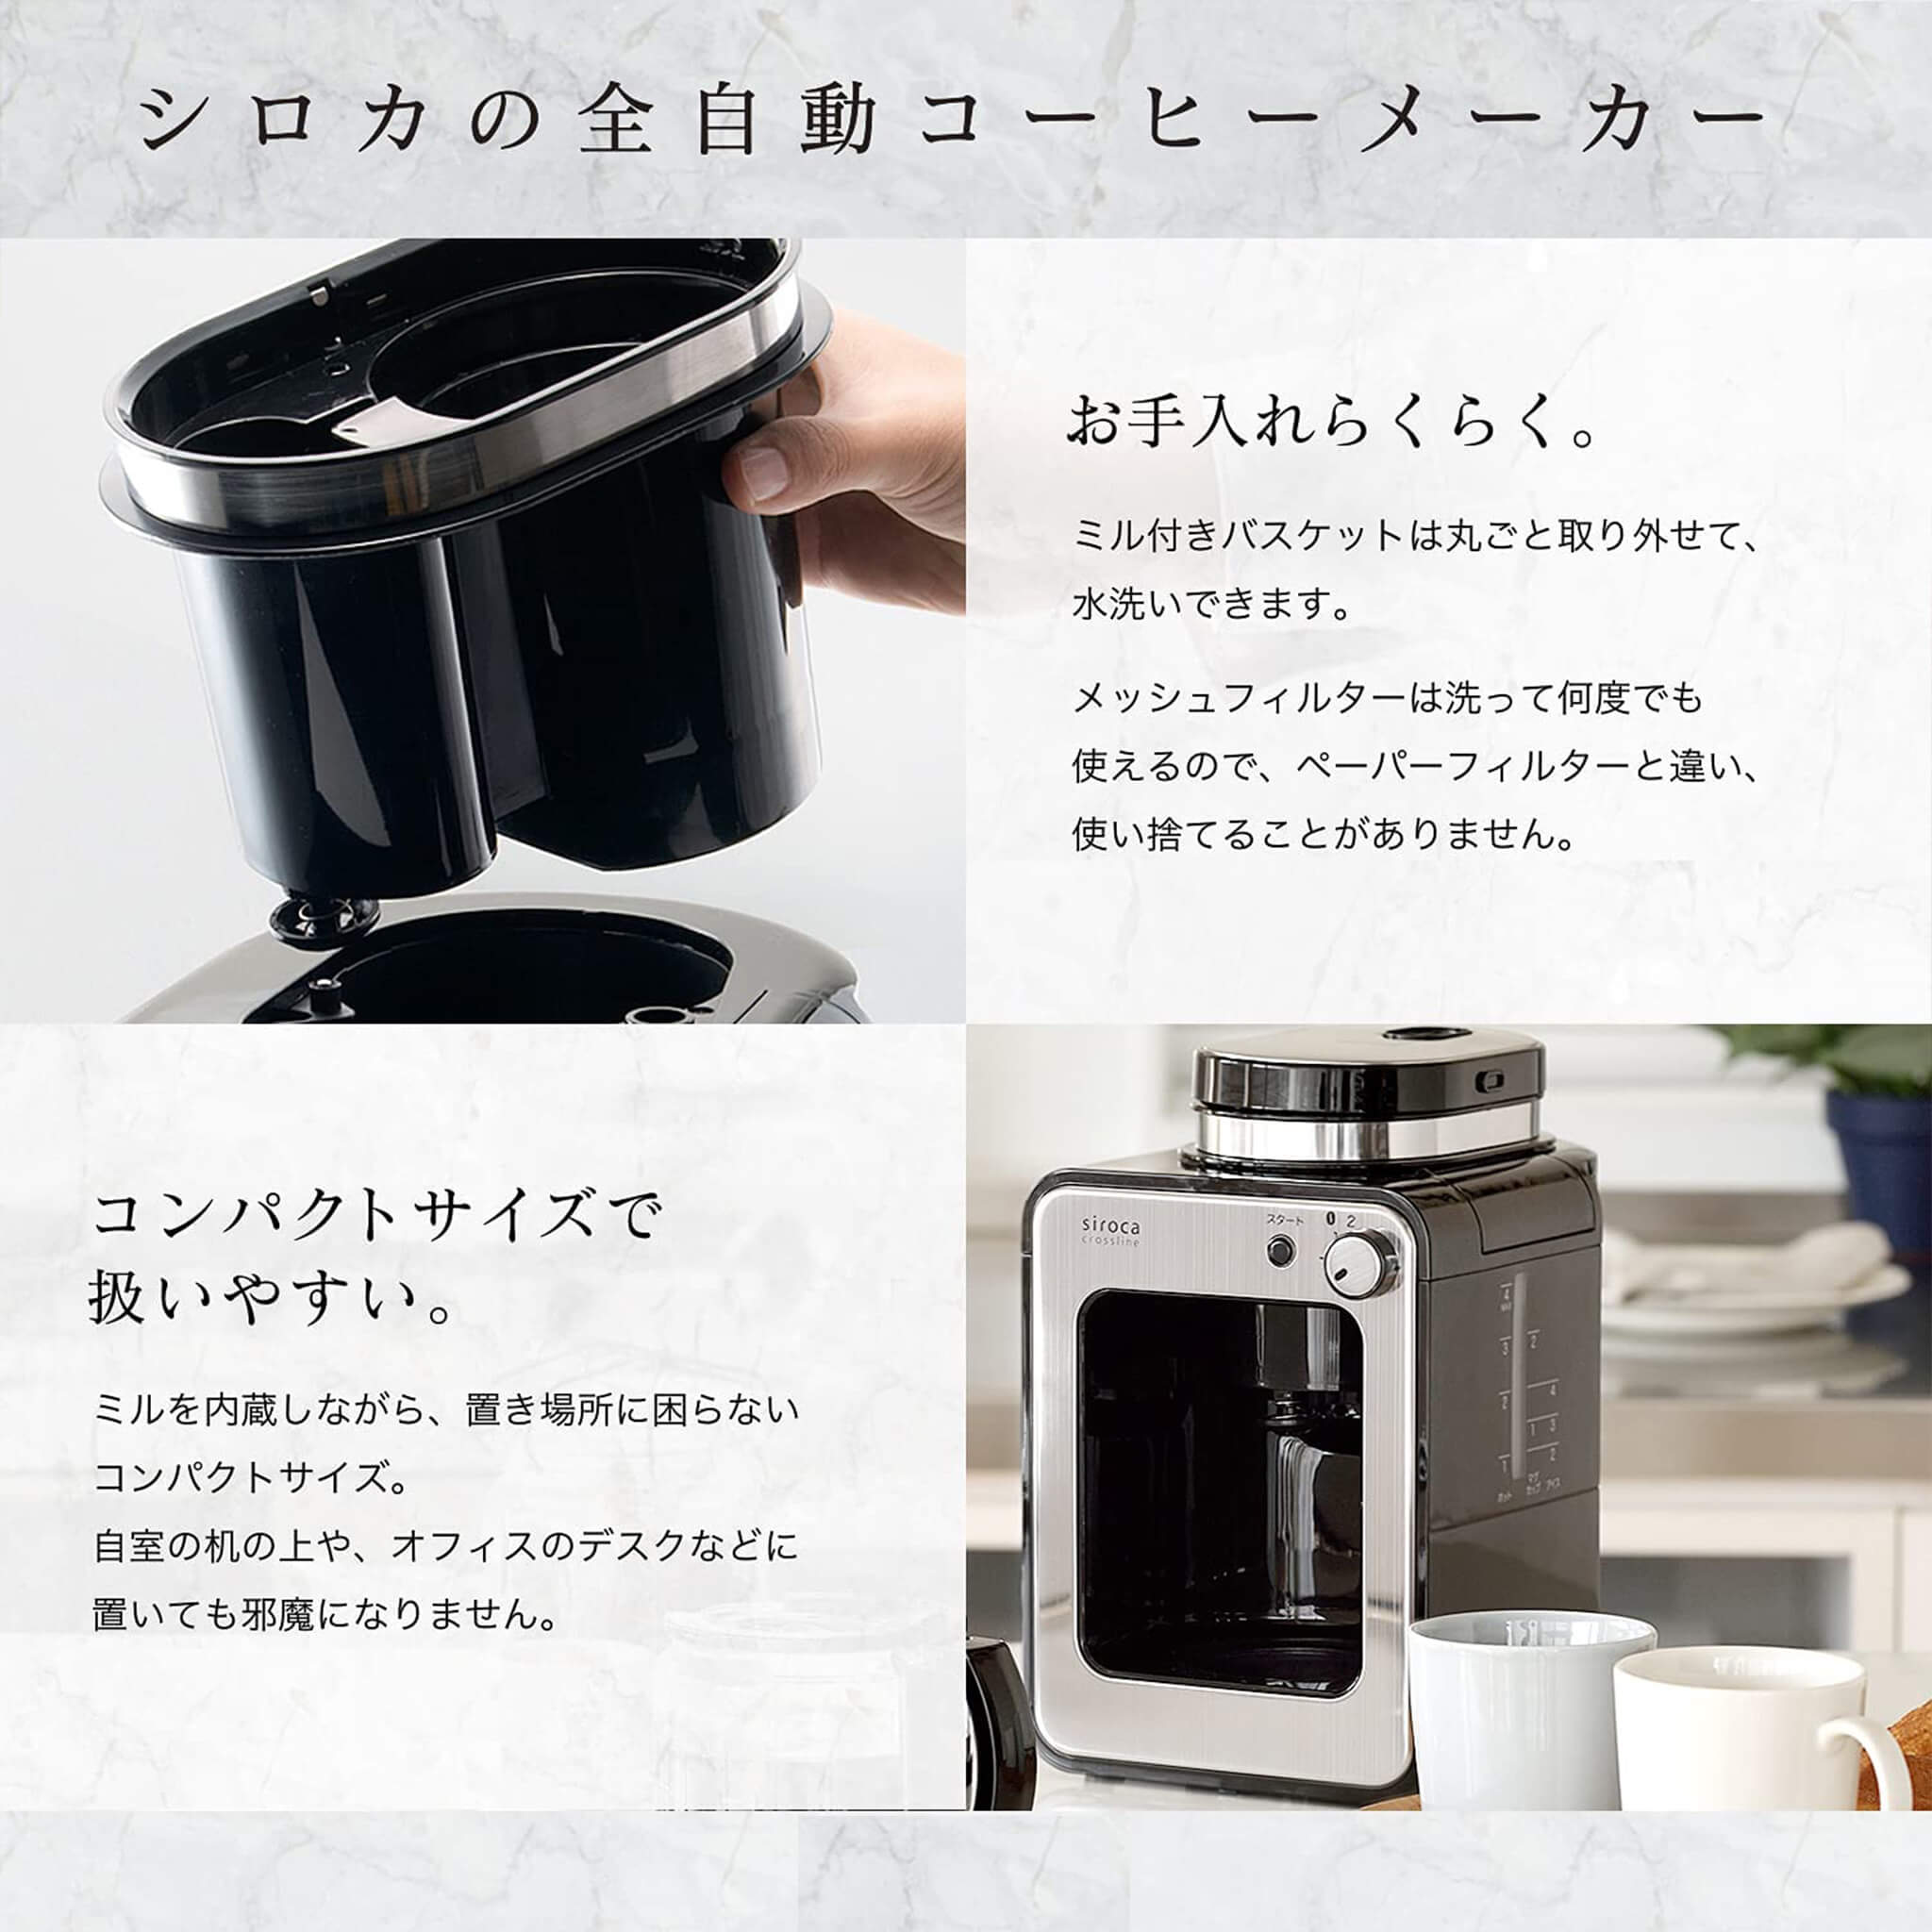 シロカ 全自動コーヒーメーカー SC-A111